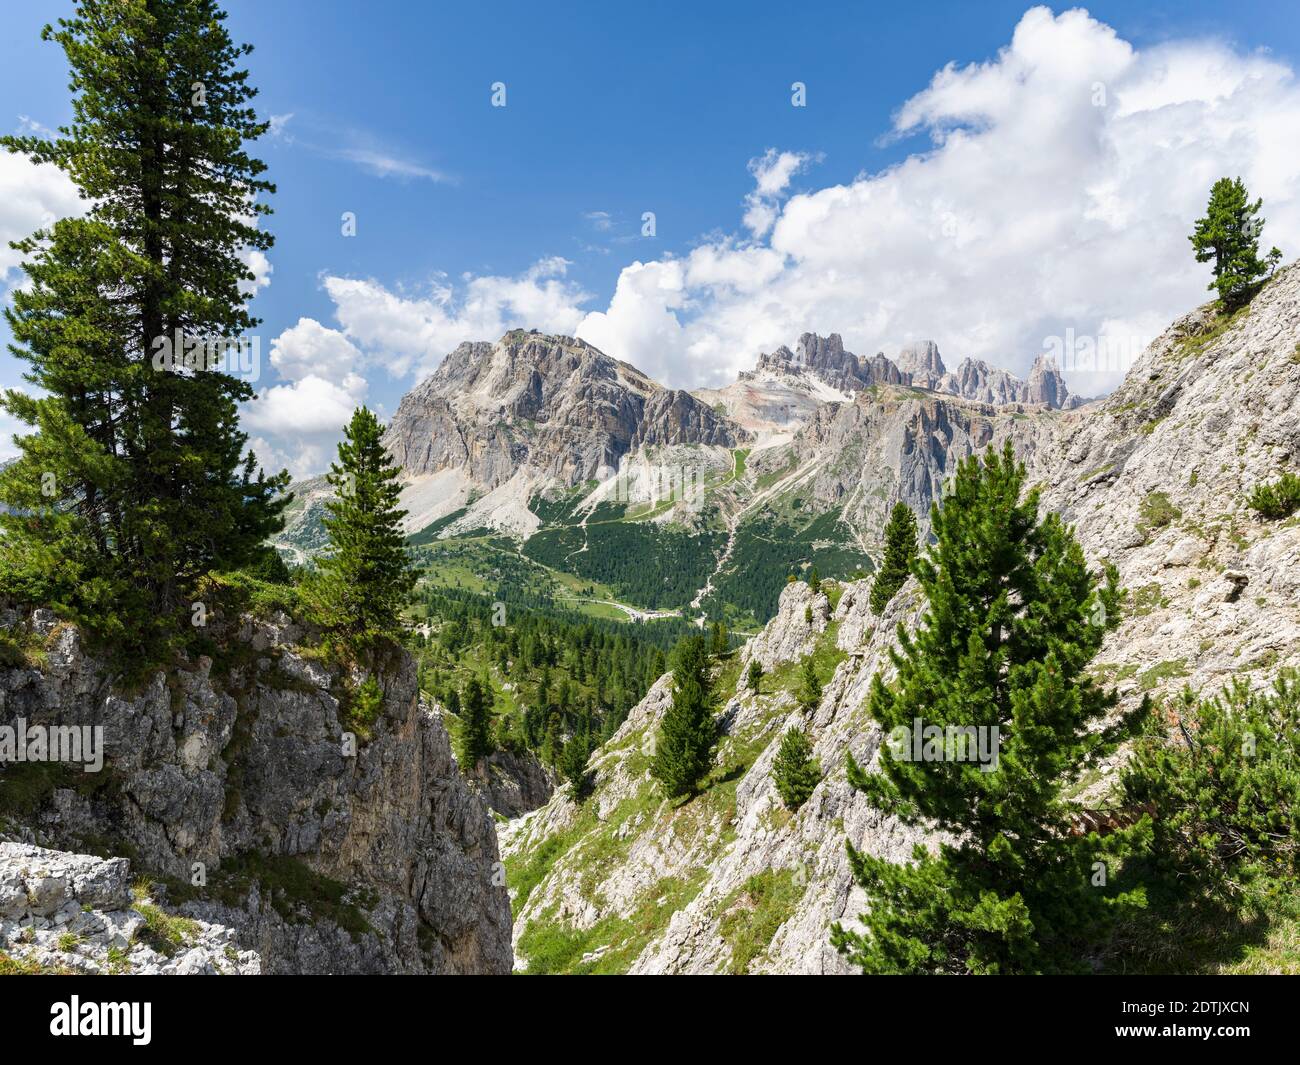 Dolomiti di Passo Falzarego, Lagazuoi, Fanes e Monte Cavallo nel parco naturale Fanes Sennes Prags, patrimonio mondiale dell'UNESCO Dolomiti Foto Stock